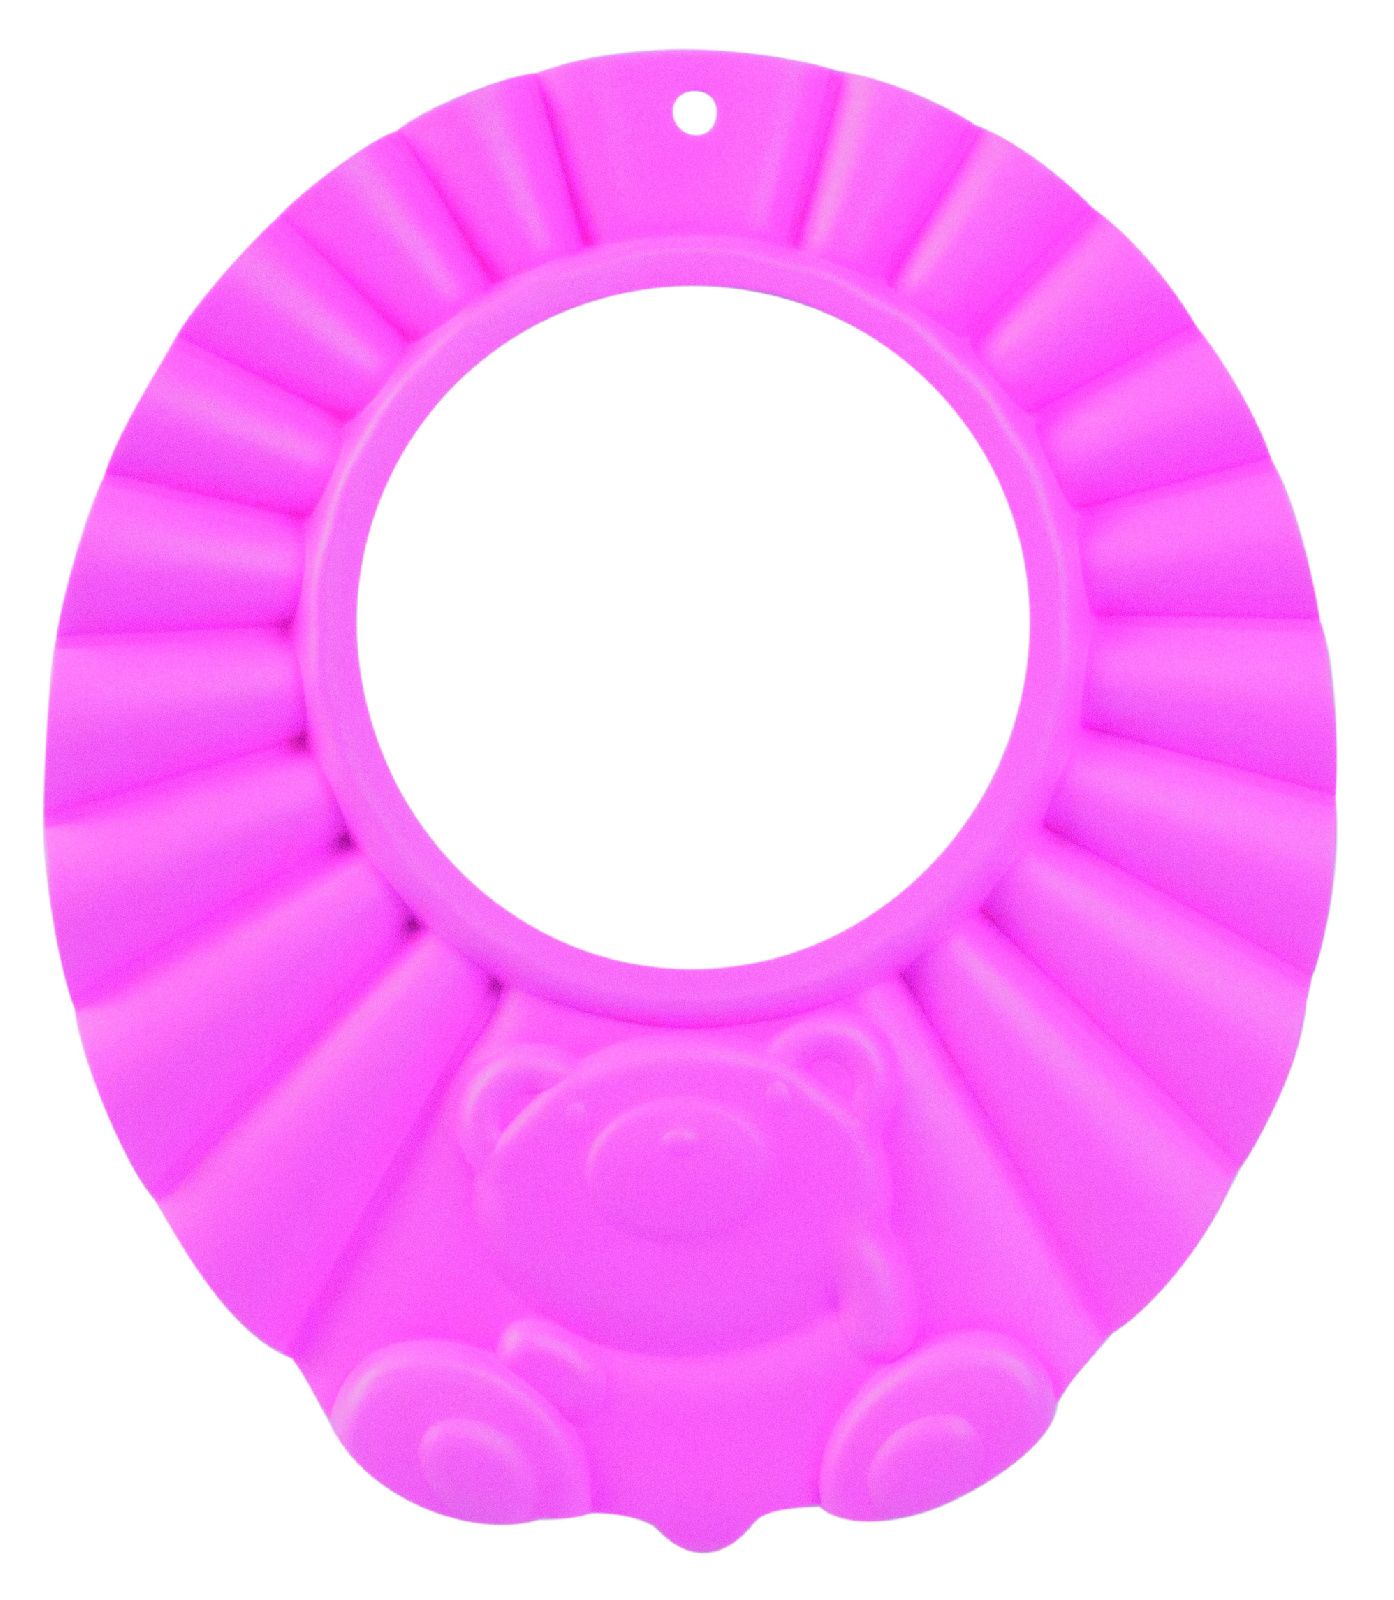 Ободок защитный для мытья волос Canpol 0+ мес., арт. 74/006, цвет: розовый эпилятор ластик женский для удаления волос розовый